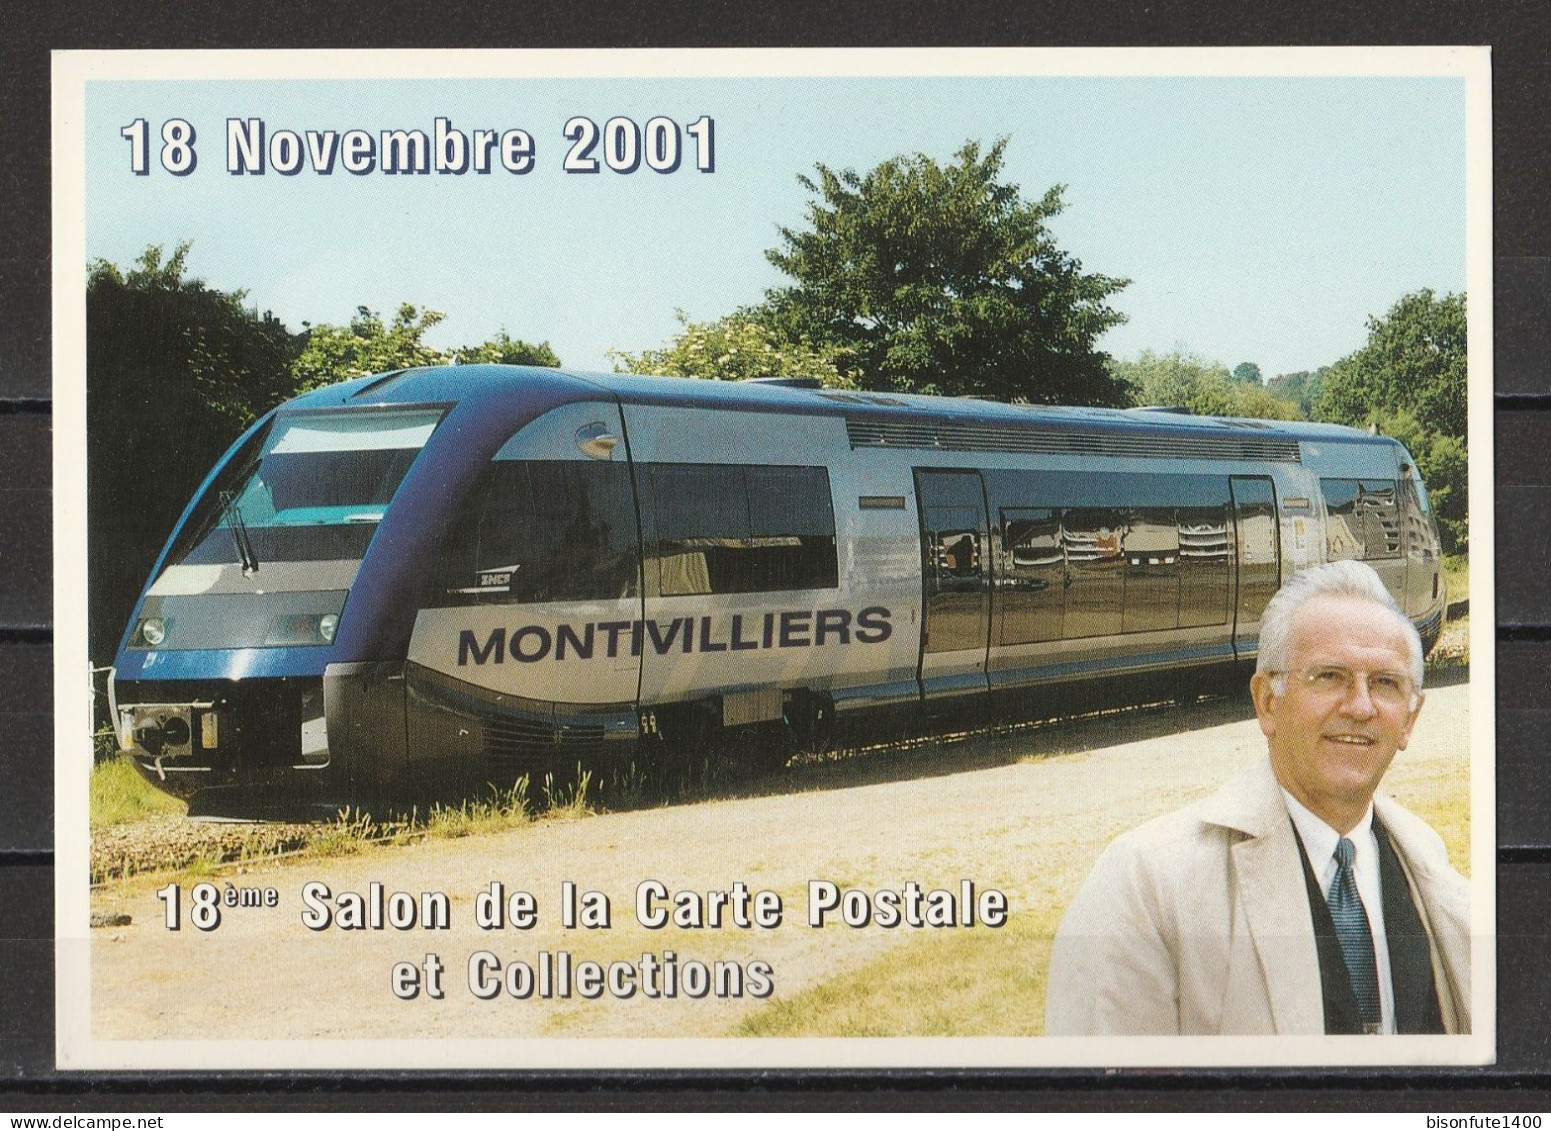 MONTVILLIERS : 18ème Salon De La Carte Postale Et Collections Du 18 Novembre 2001 (voir Photo). - Montivilliers